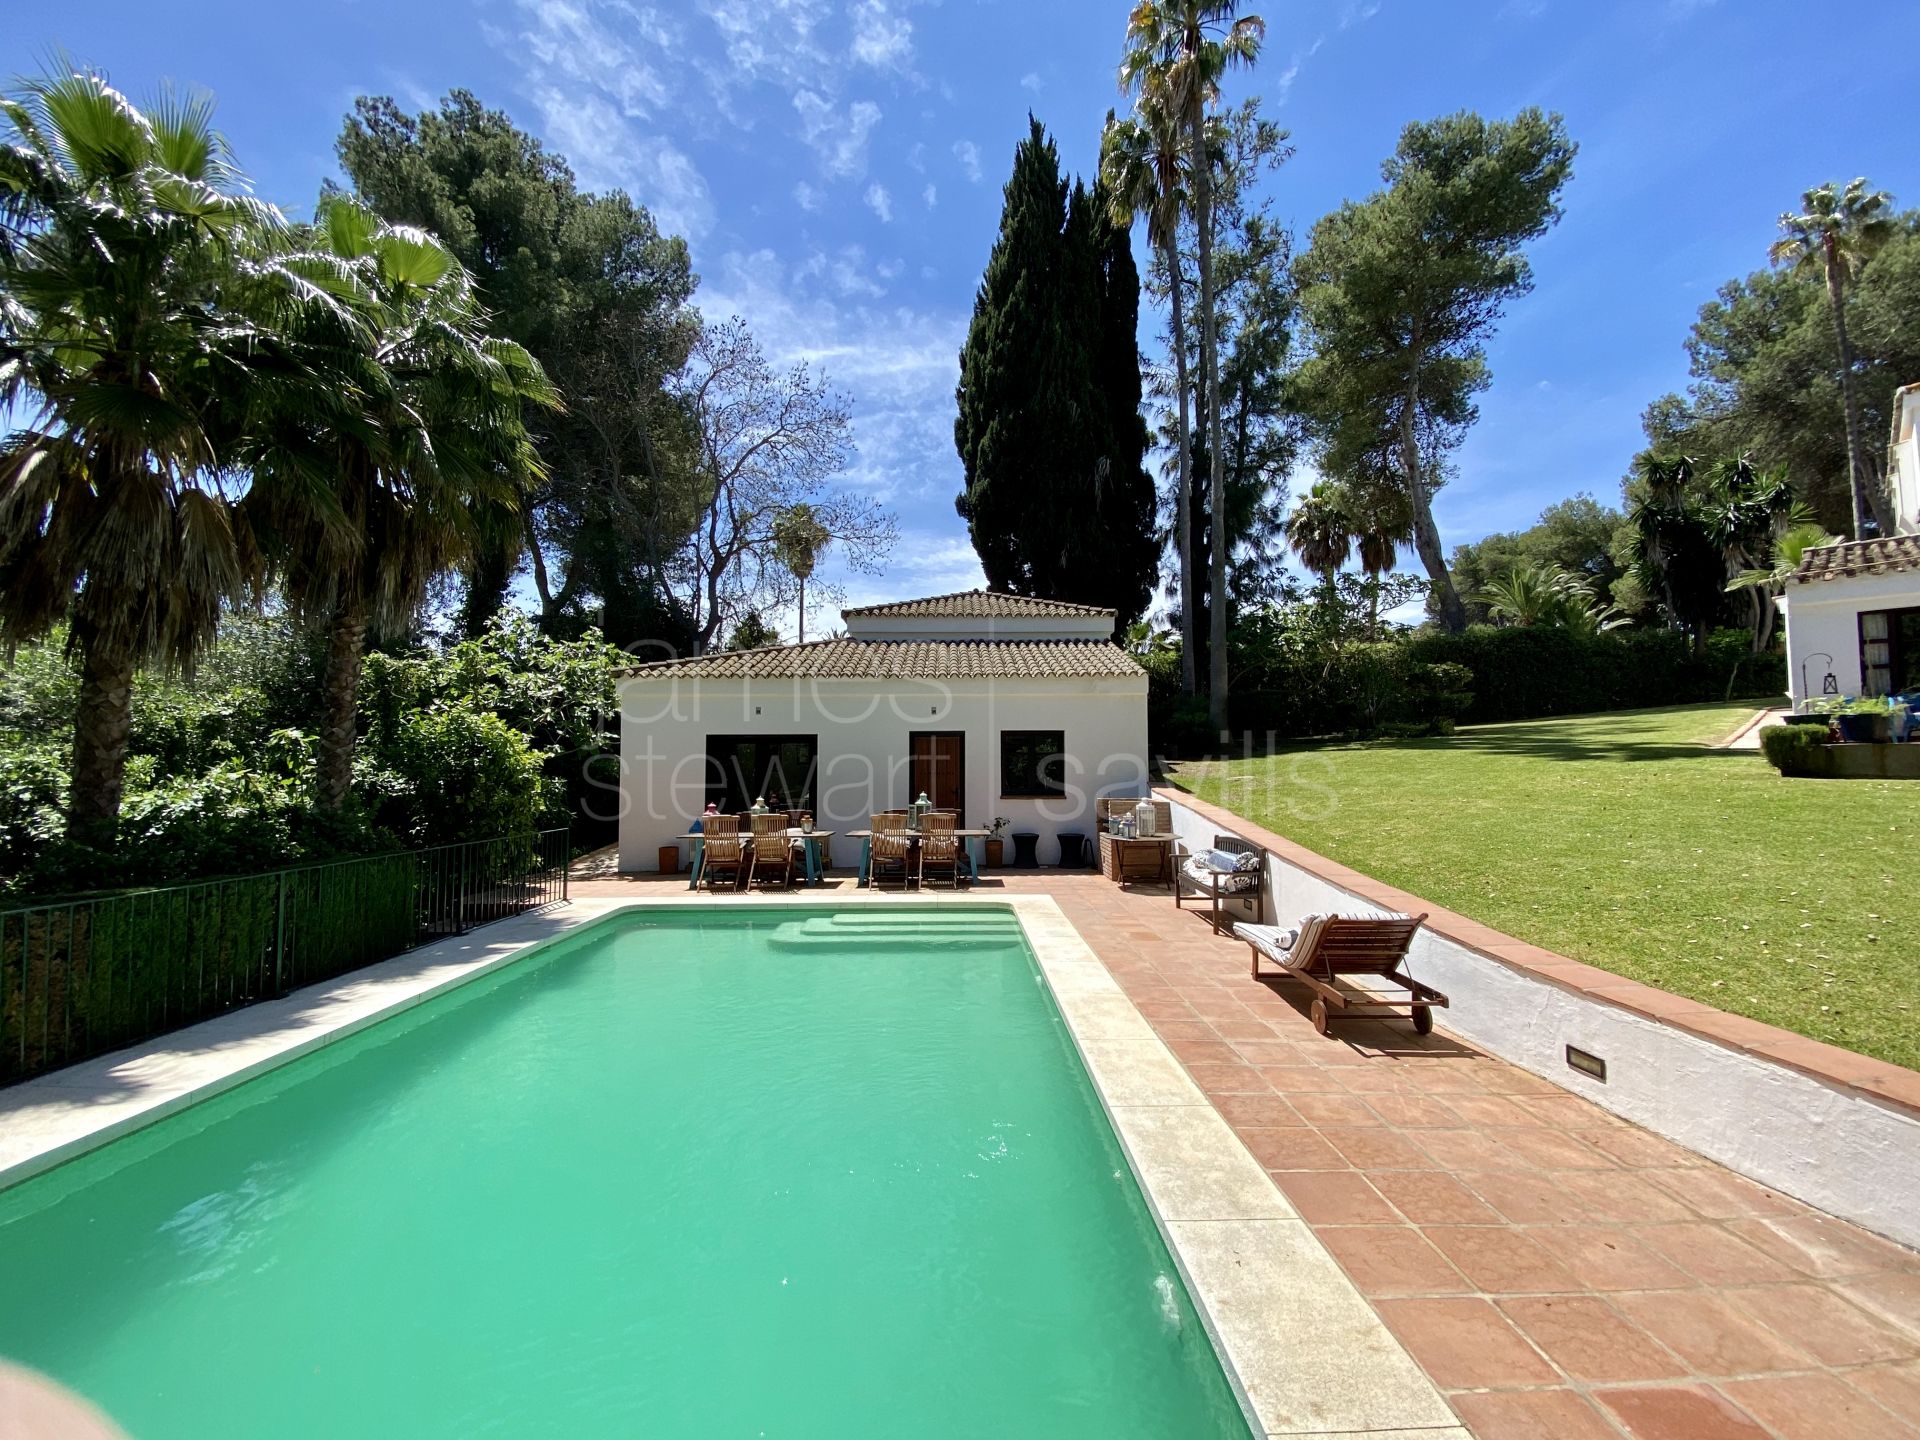 Villa con casa de invitados junto a la piscina en la zona A - Sotogrande Costa